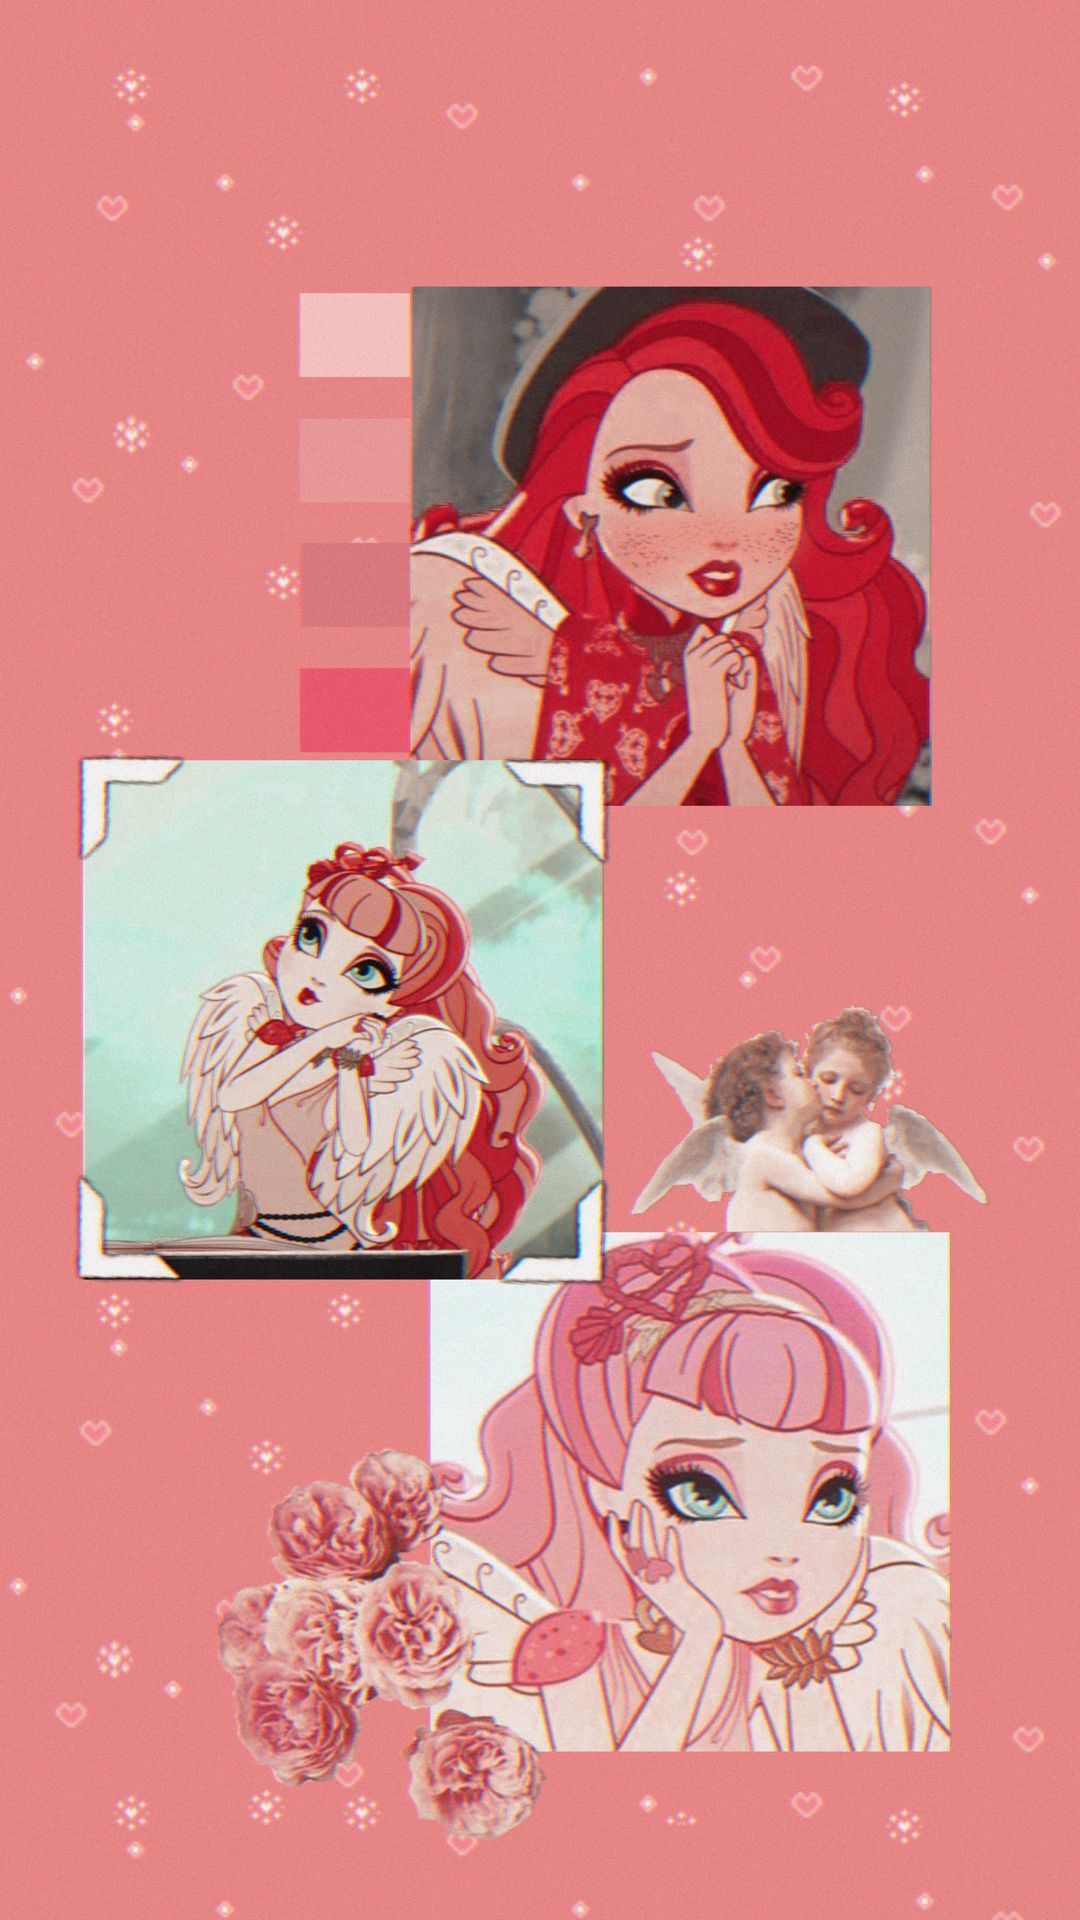 Phone wallpaper. Magical girl anime, Wallpaper, Girl wallpaper